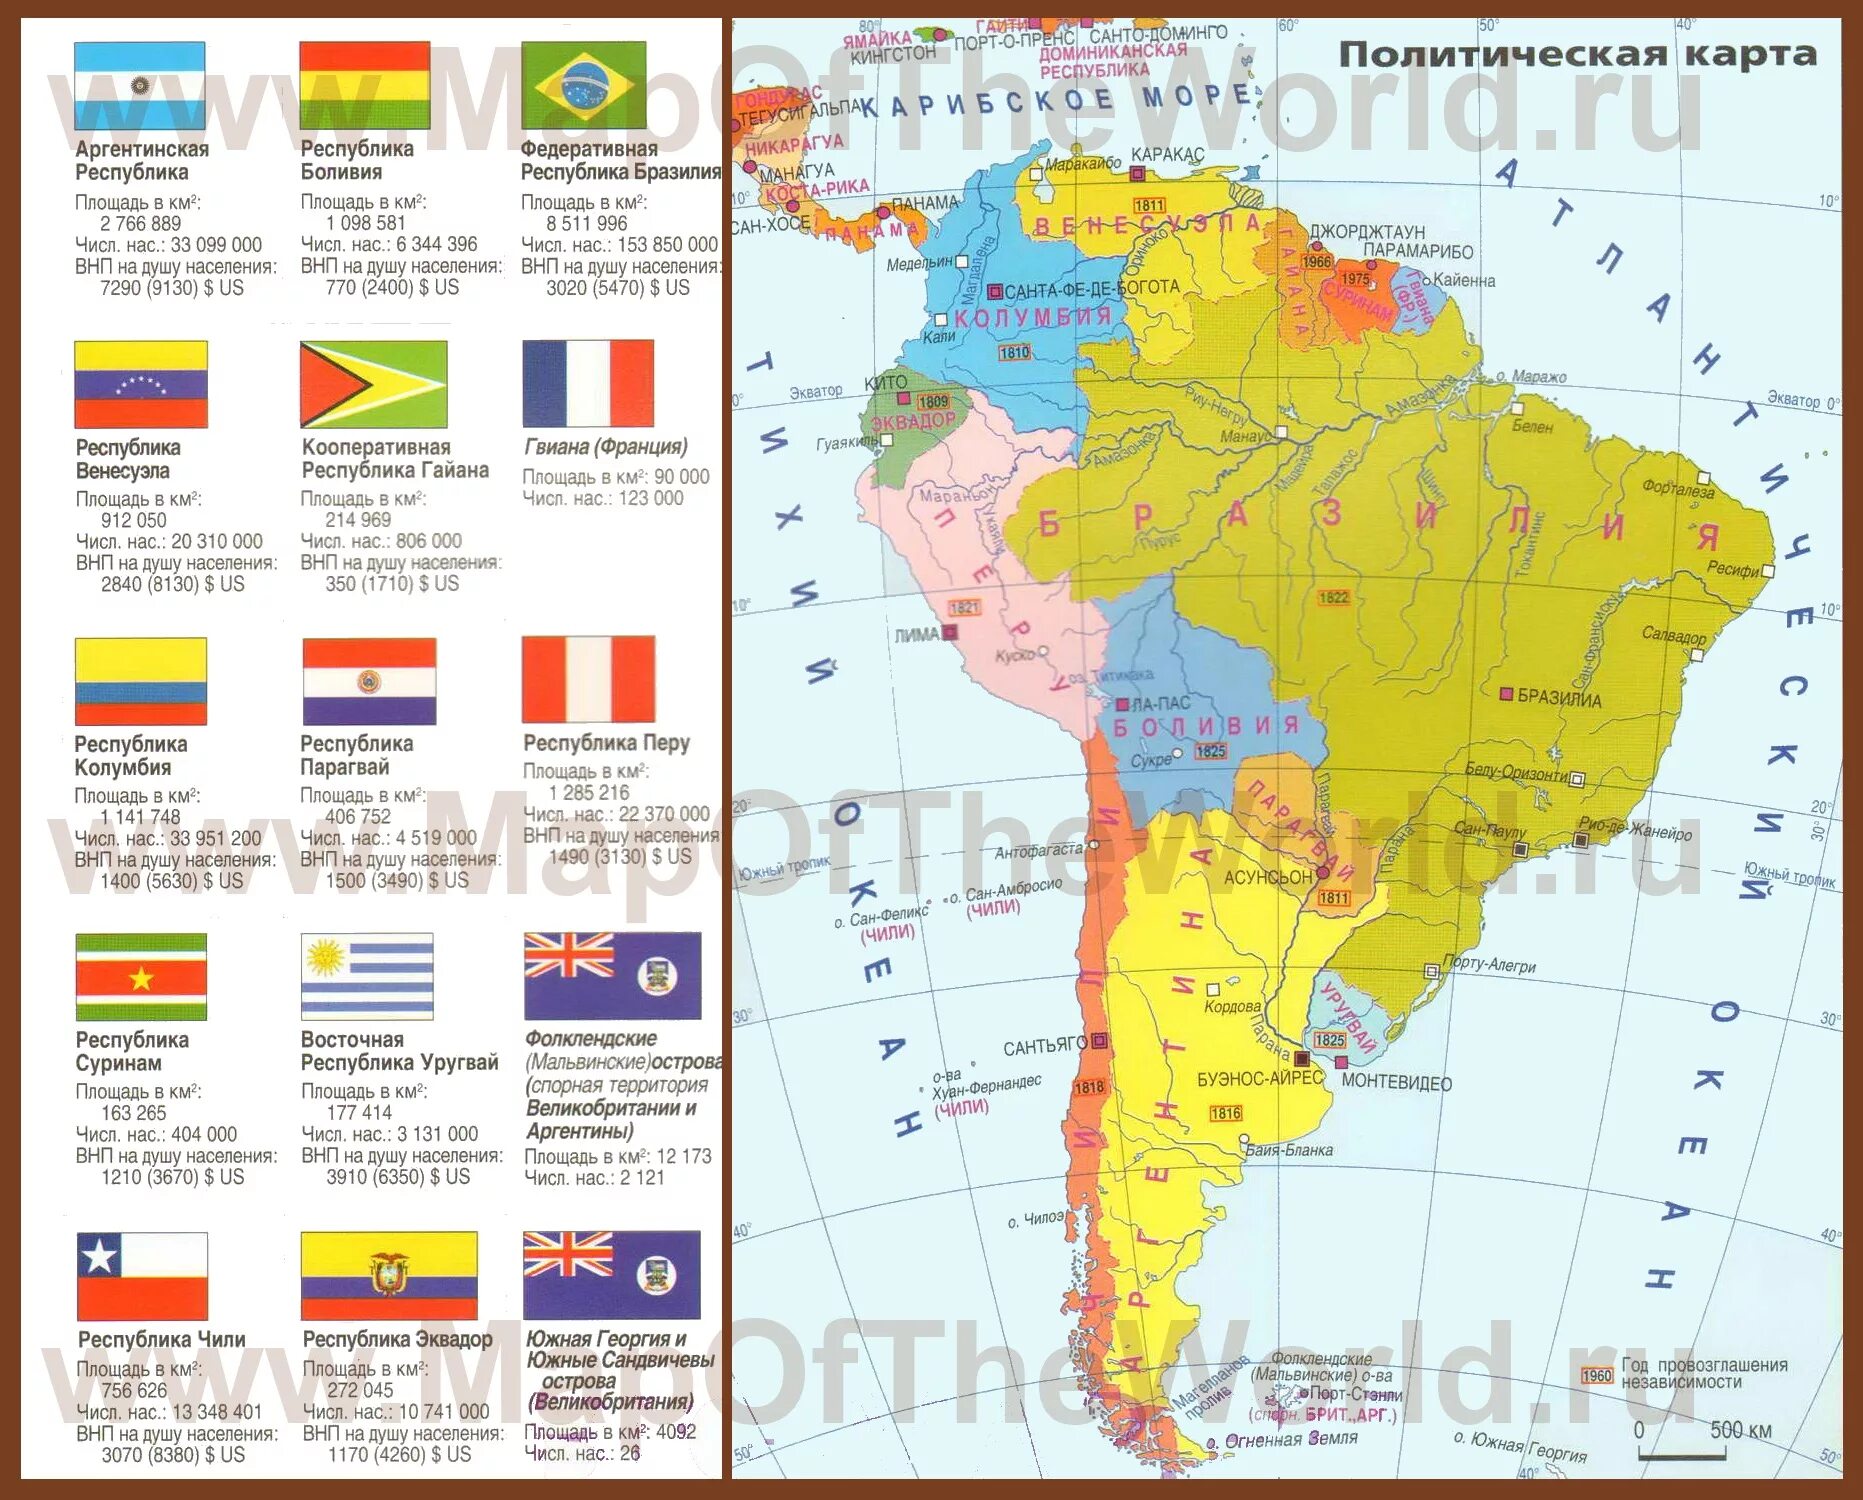 Политическая карта Южной Америки со странами на русском. Страны Южной Америки на карте на русском. Карта Южной Америки политическая на русском языке со странами. Южная Америка карта политическая на русском языке со столицами.